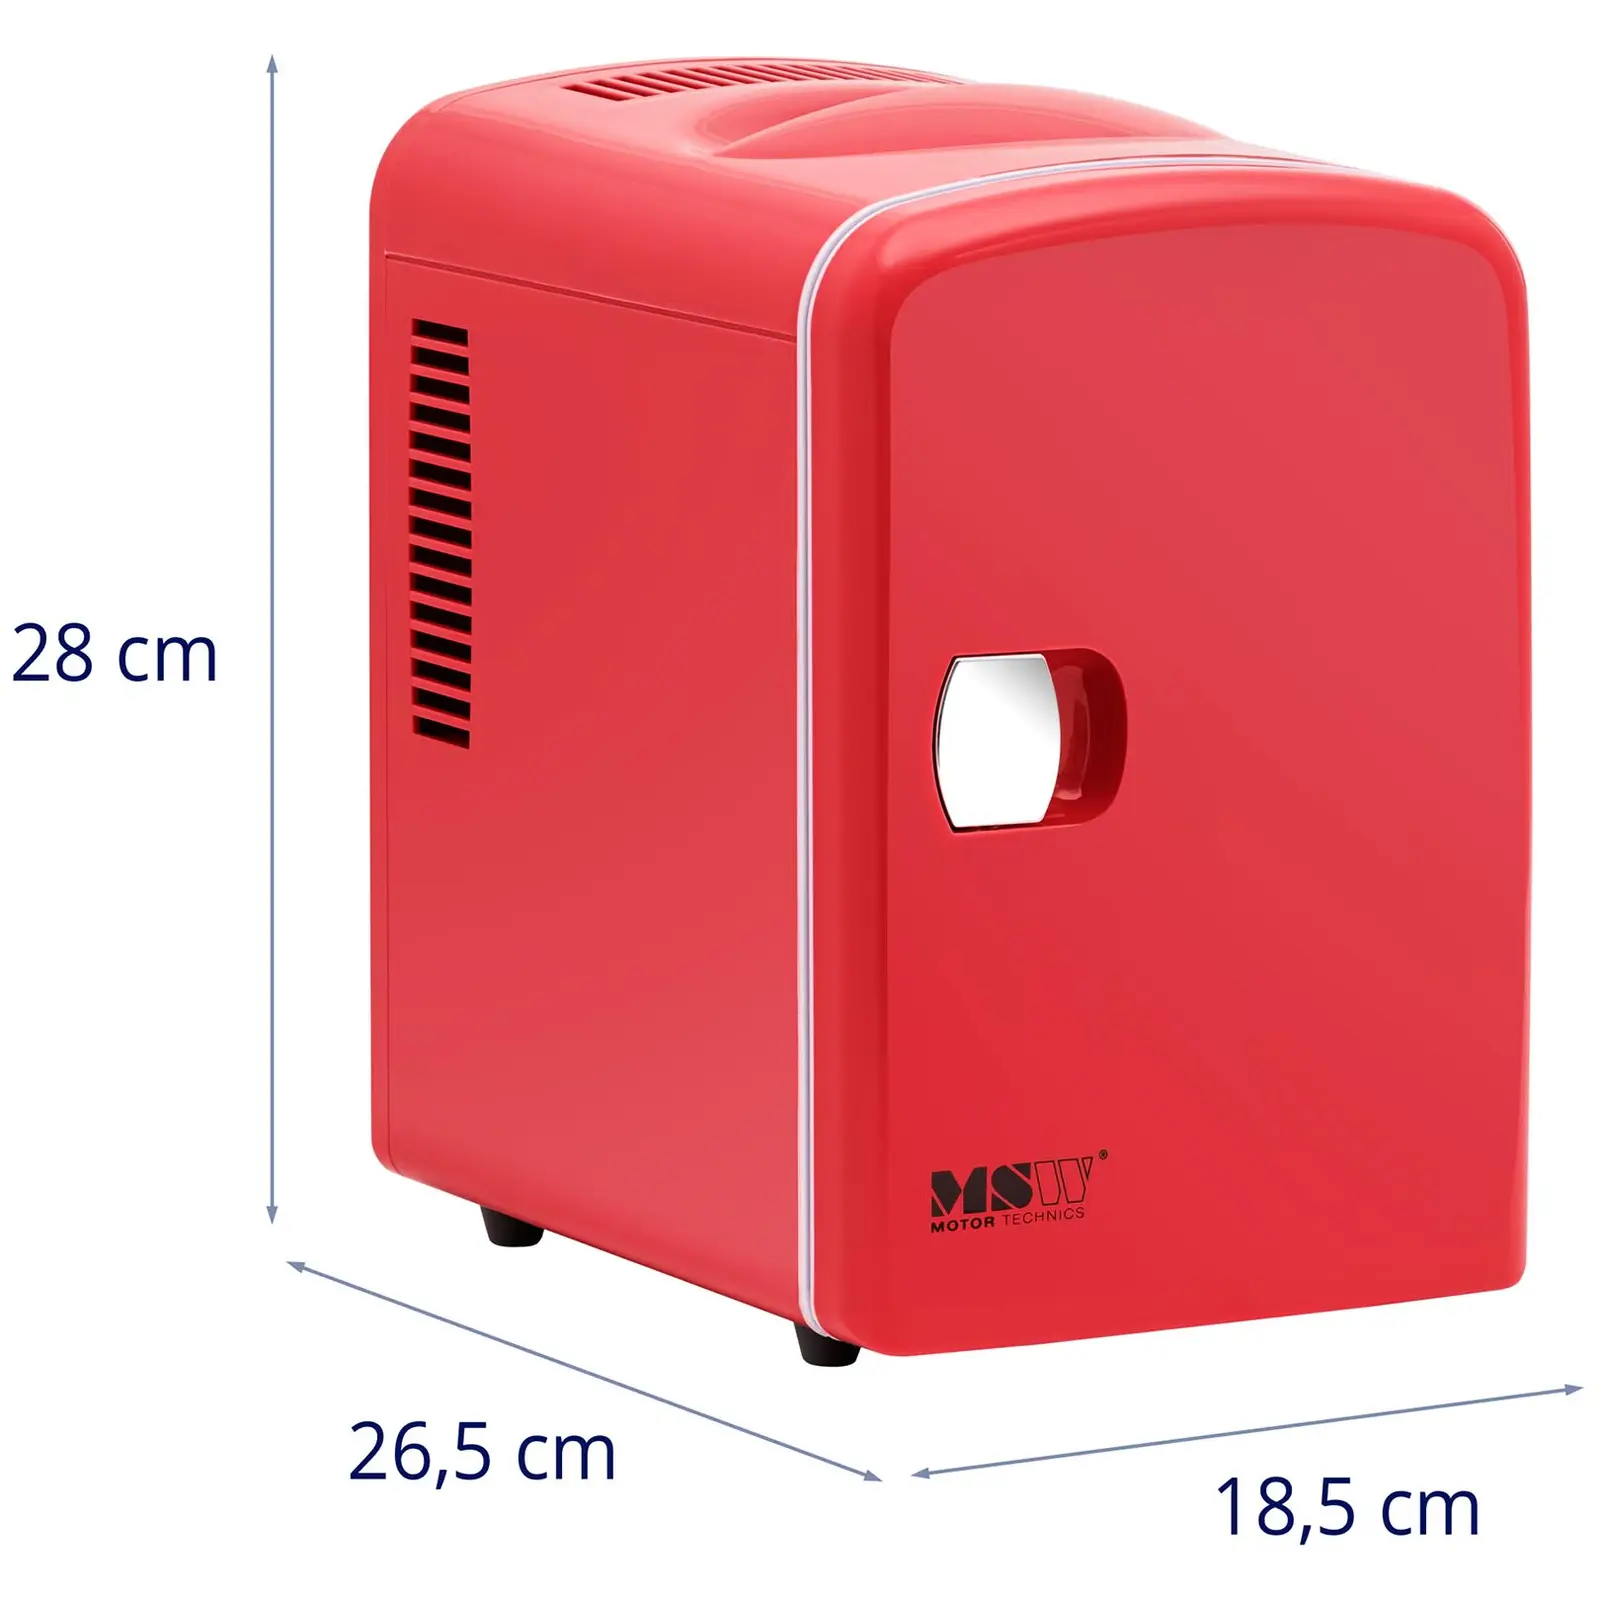 Mini chladnička 12 V / 230 V - zařízení 2 v 1 s funkcí ohřevu - 4 l - červená